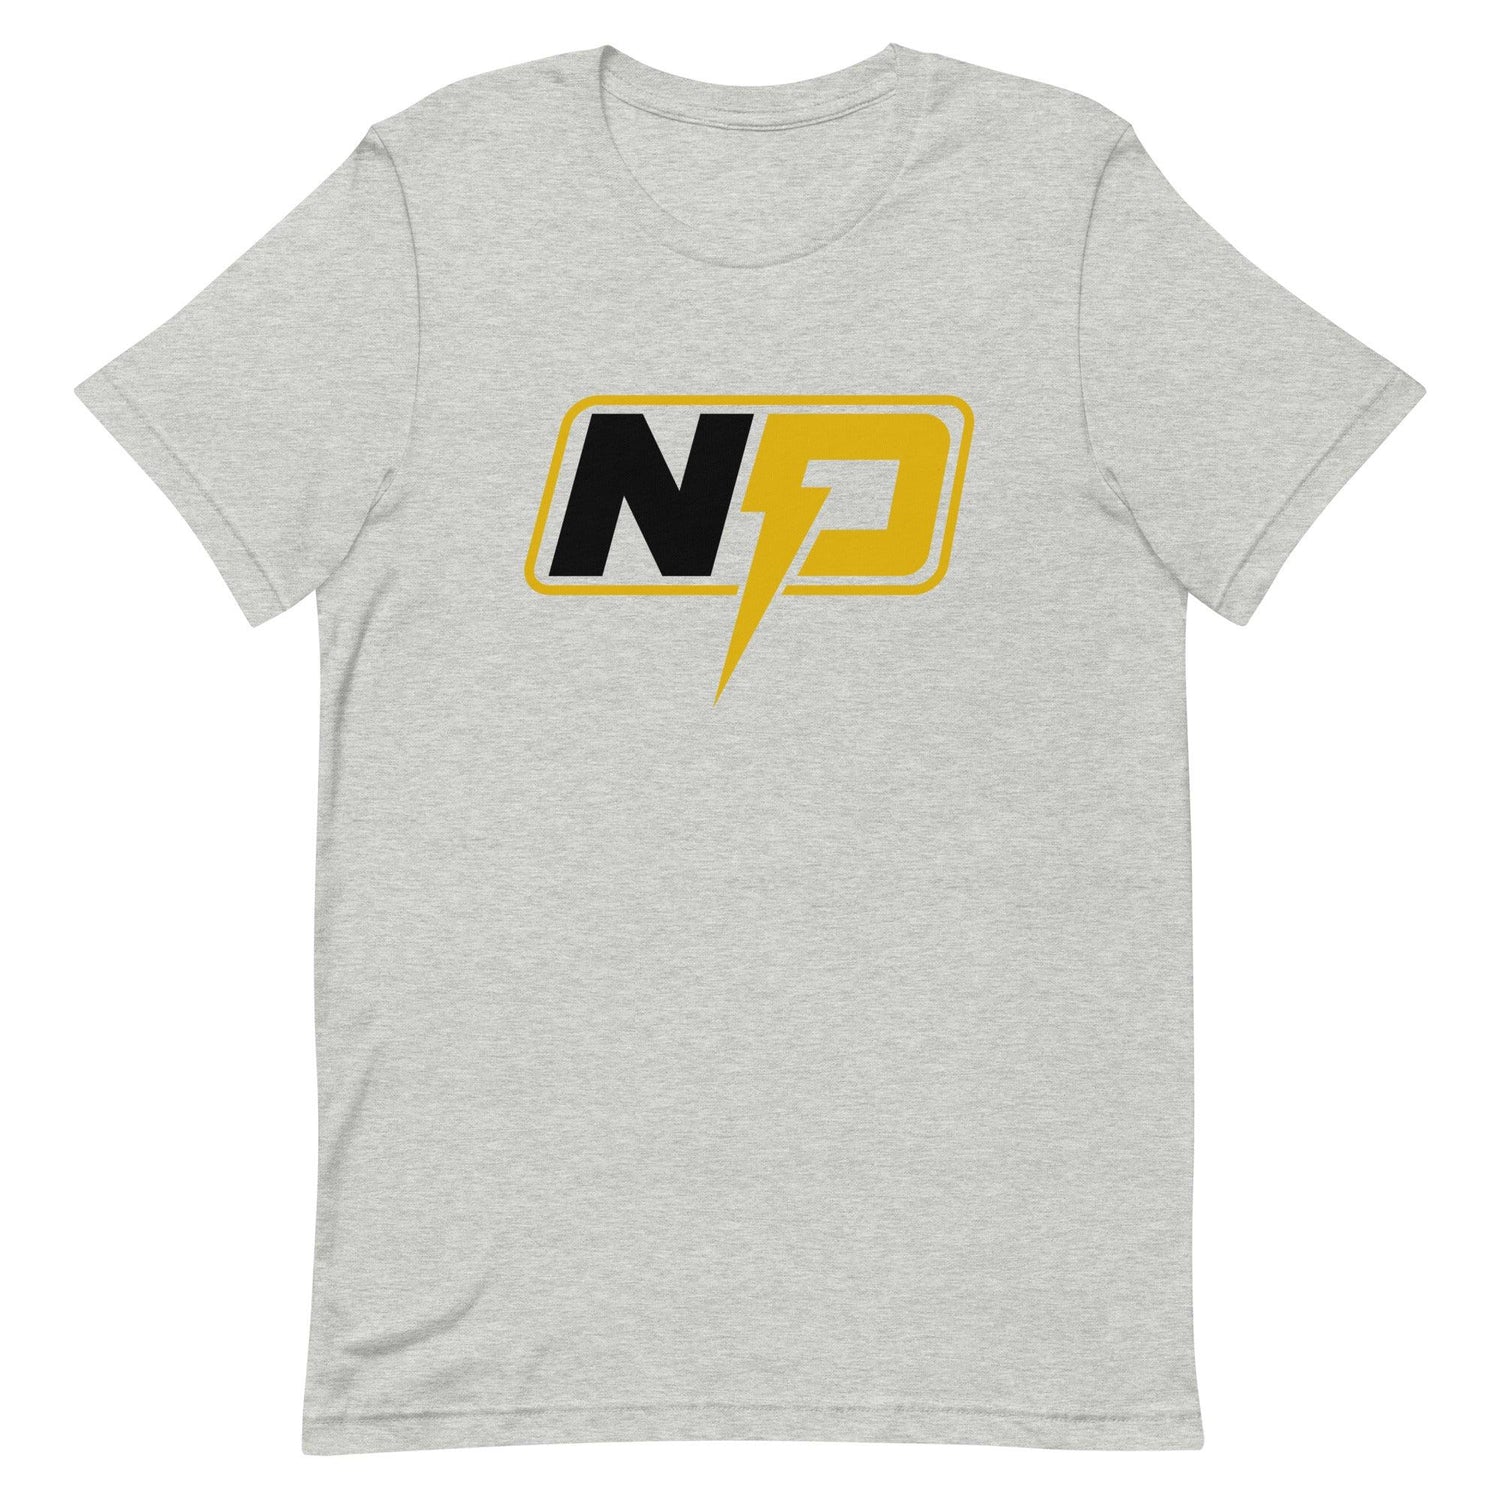 Nathaniel Peat “Essential” t-shirt - Fan Arch